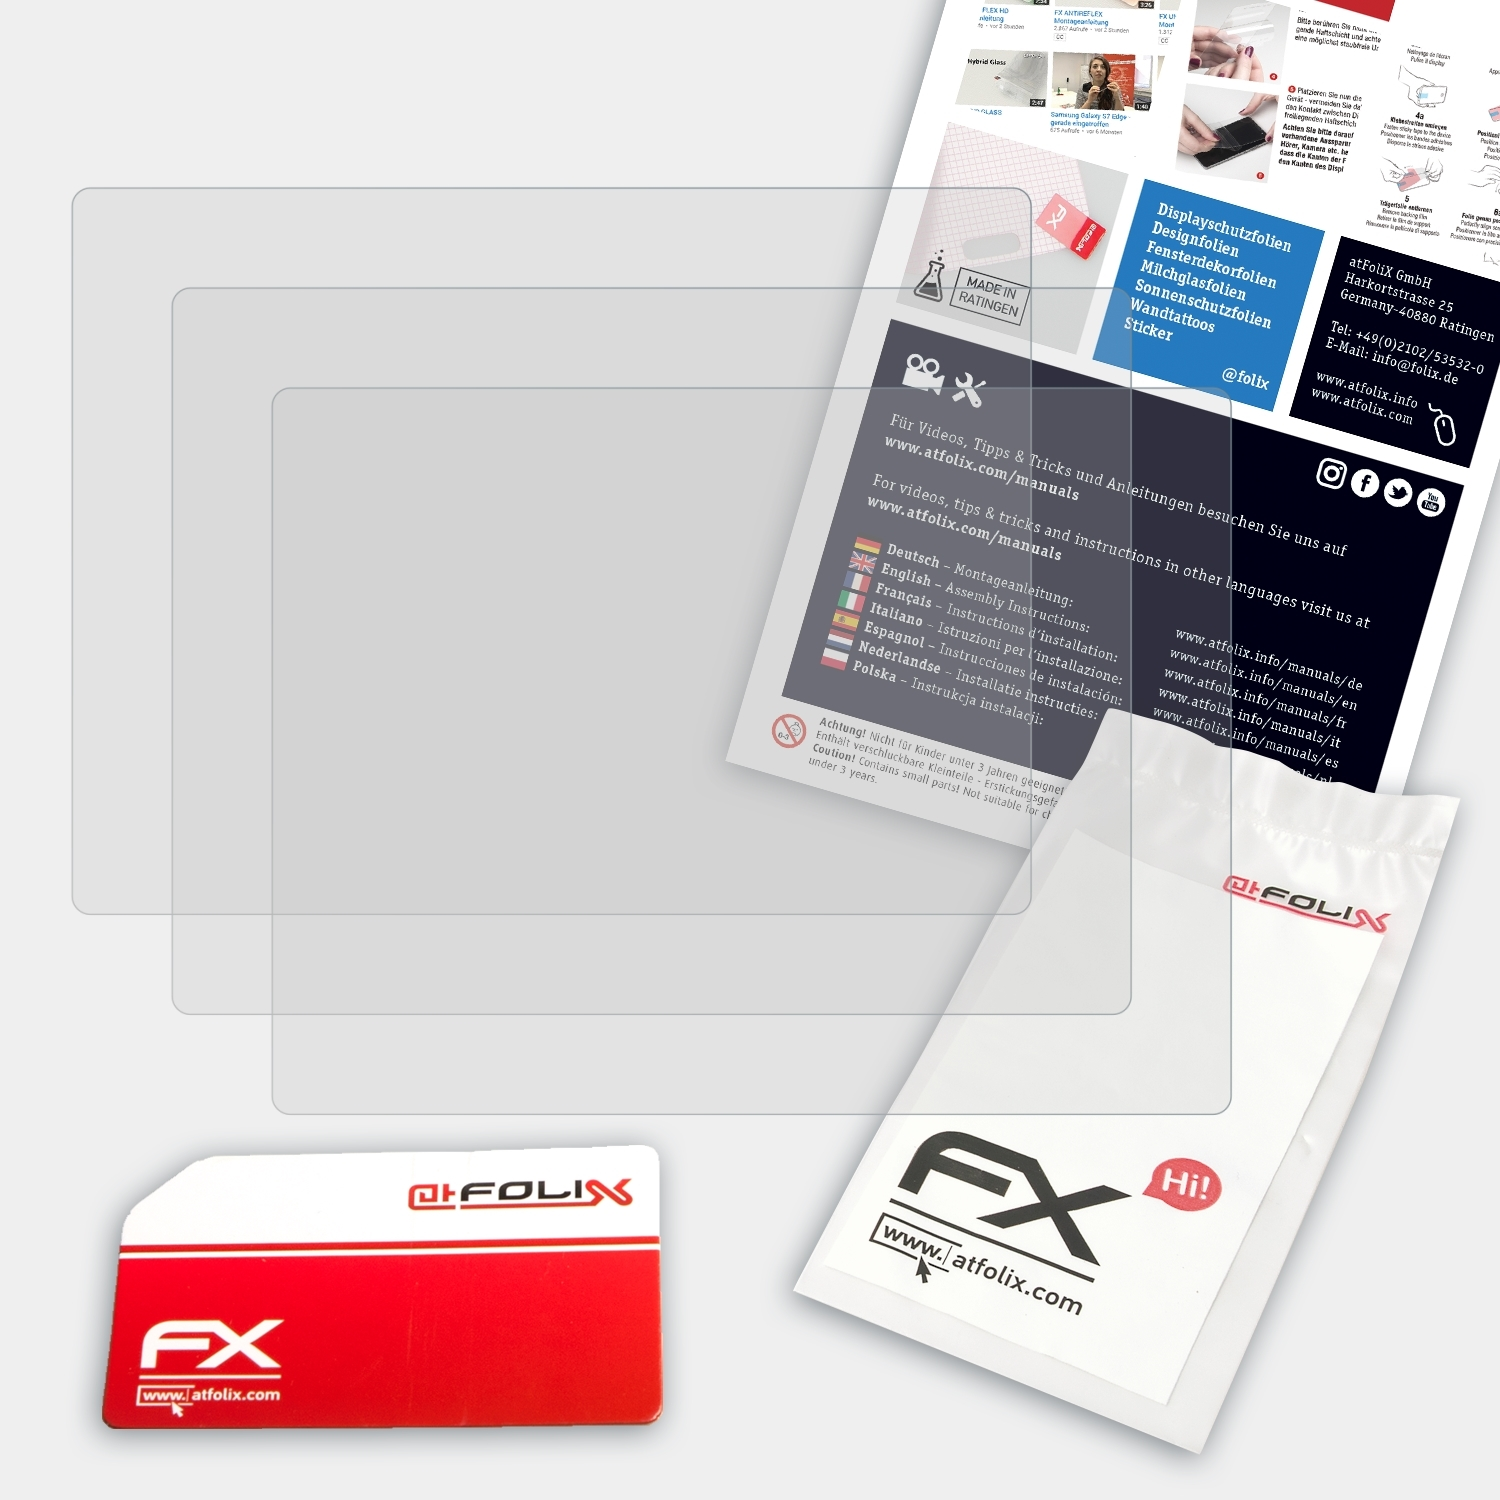 ATFOLIX 3x FX-Antireflex Displayschutz(für Garmin Zumo 500 deluxe)